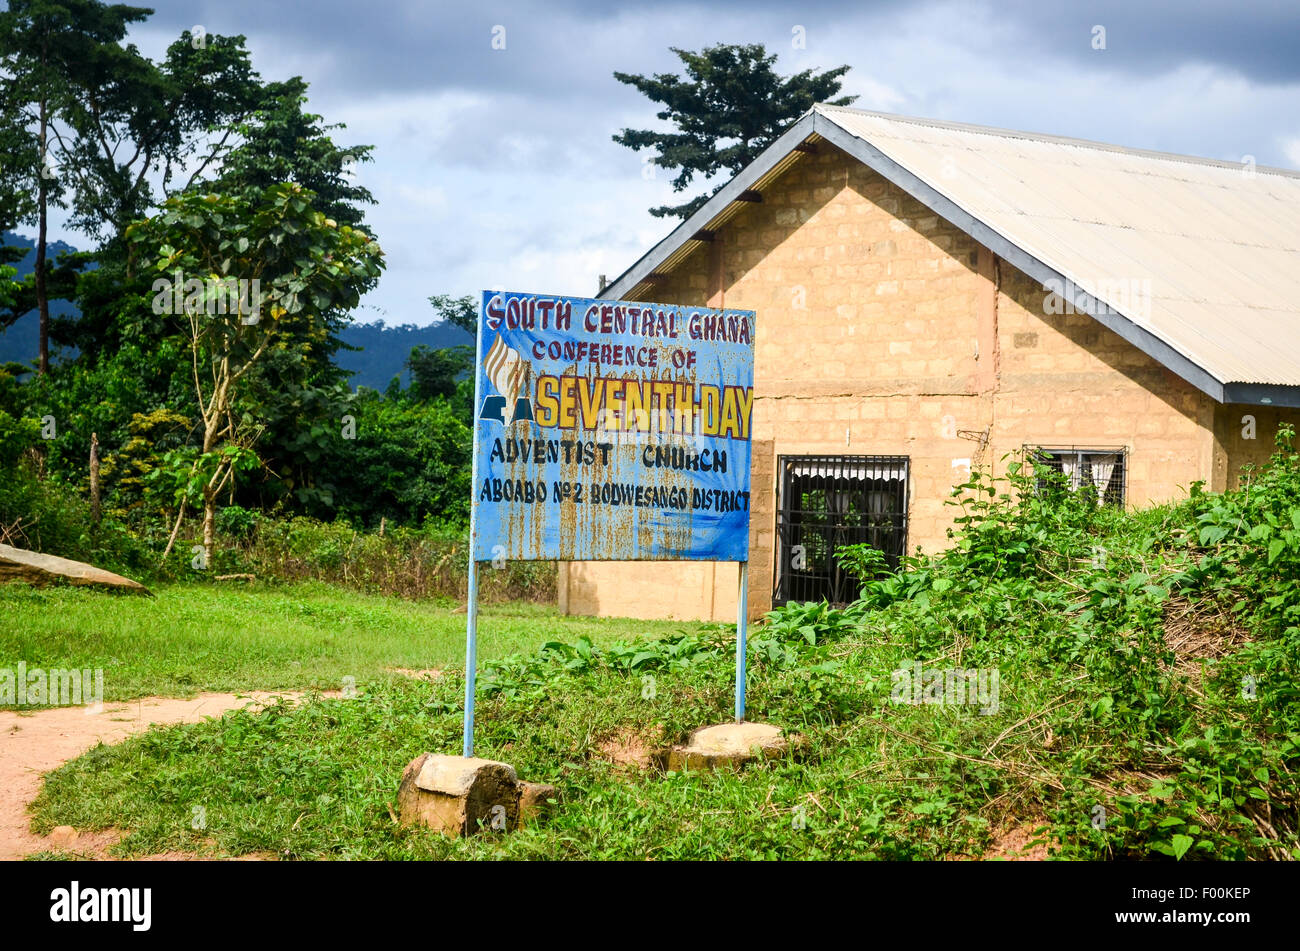 Iglesia de los adventistas del séptimo día - Conferencia de Ghana Central  Sur Fotografía de stock - Alamy